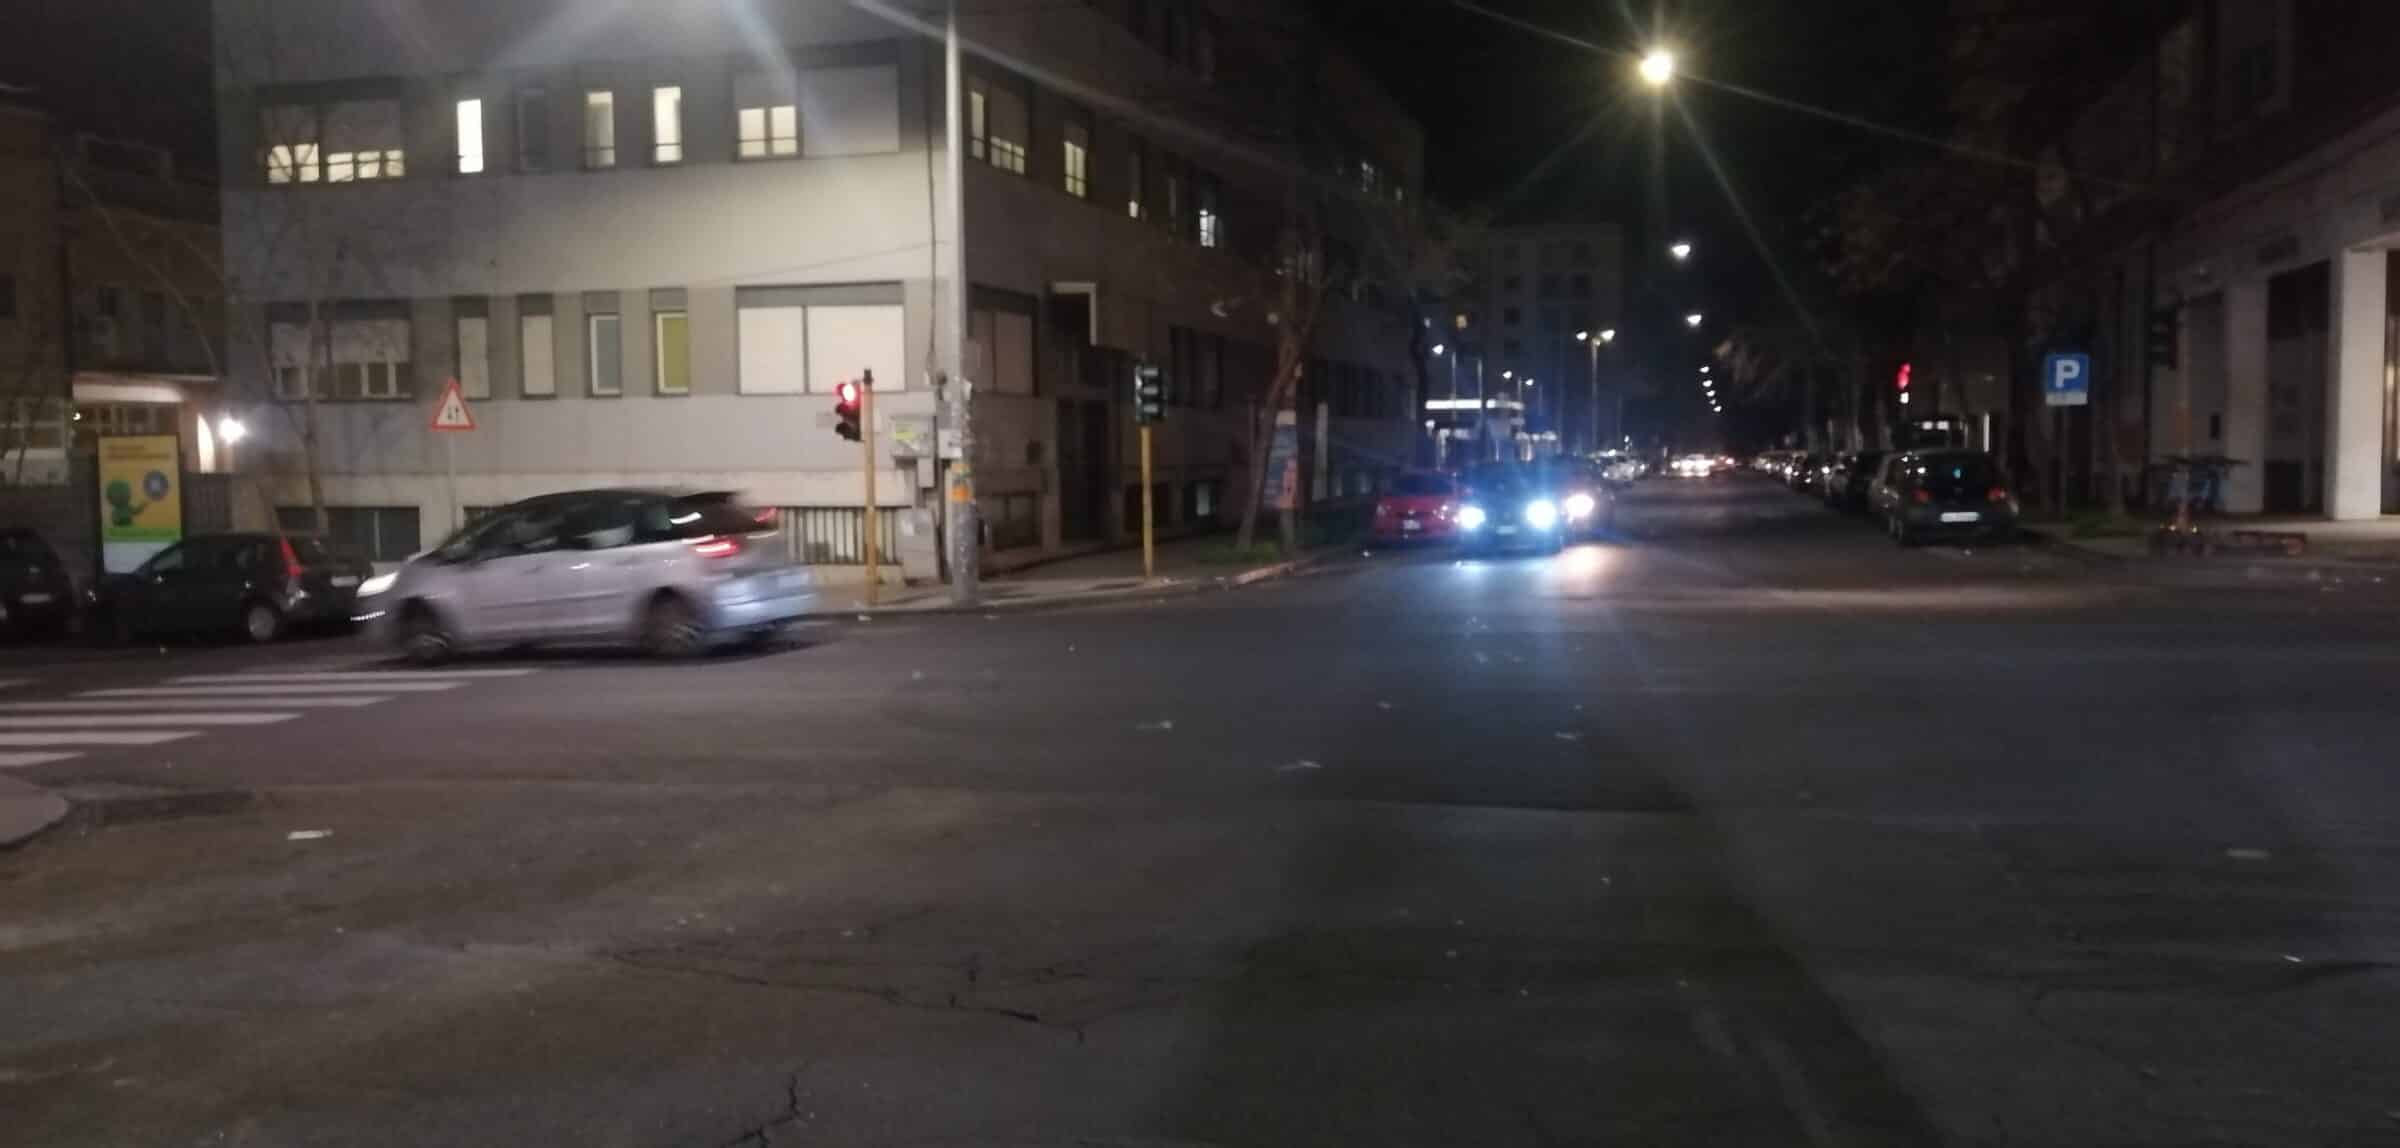 Catania, rischio incidenti al viale Mario Rapisardi: l’allarme lanciato dal comitato Romolo Murri